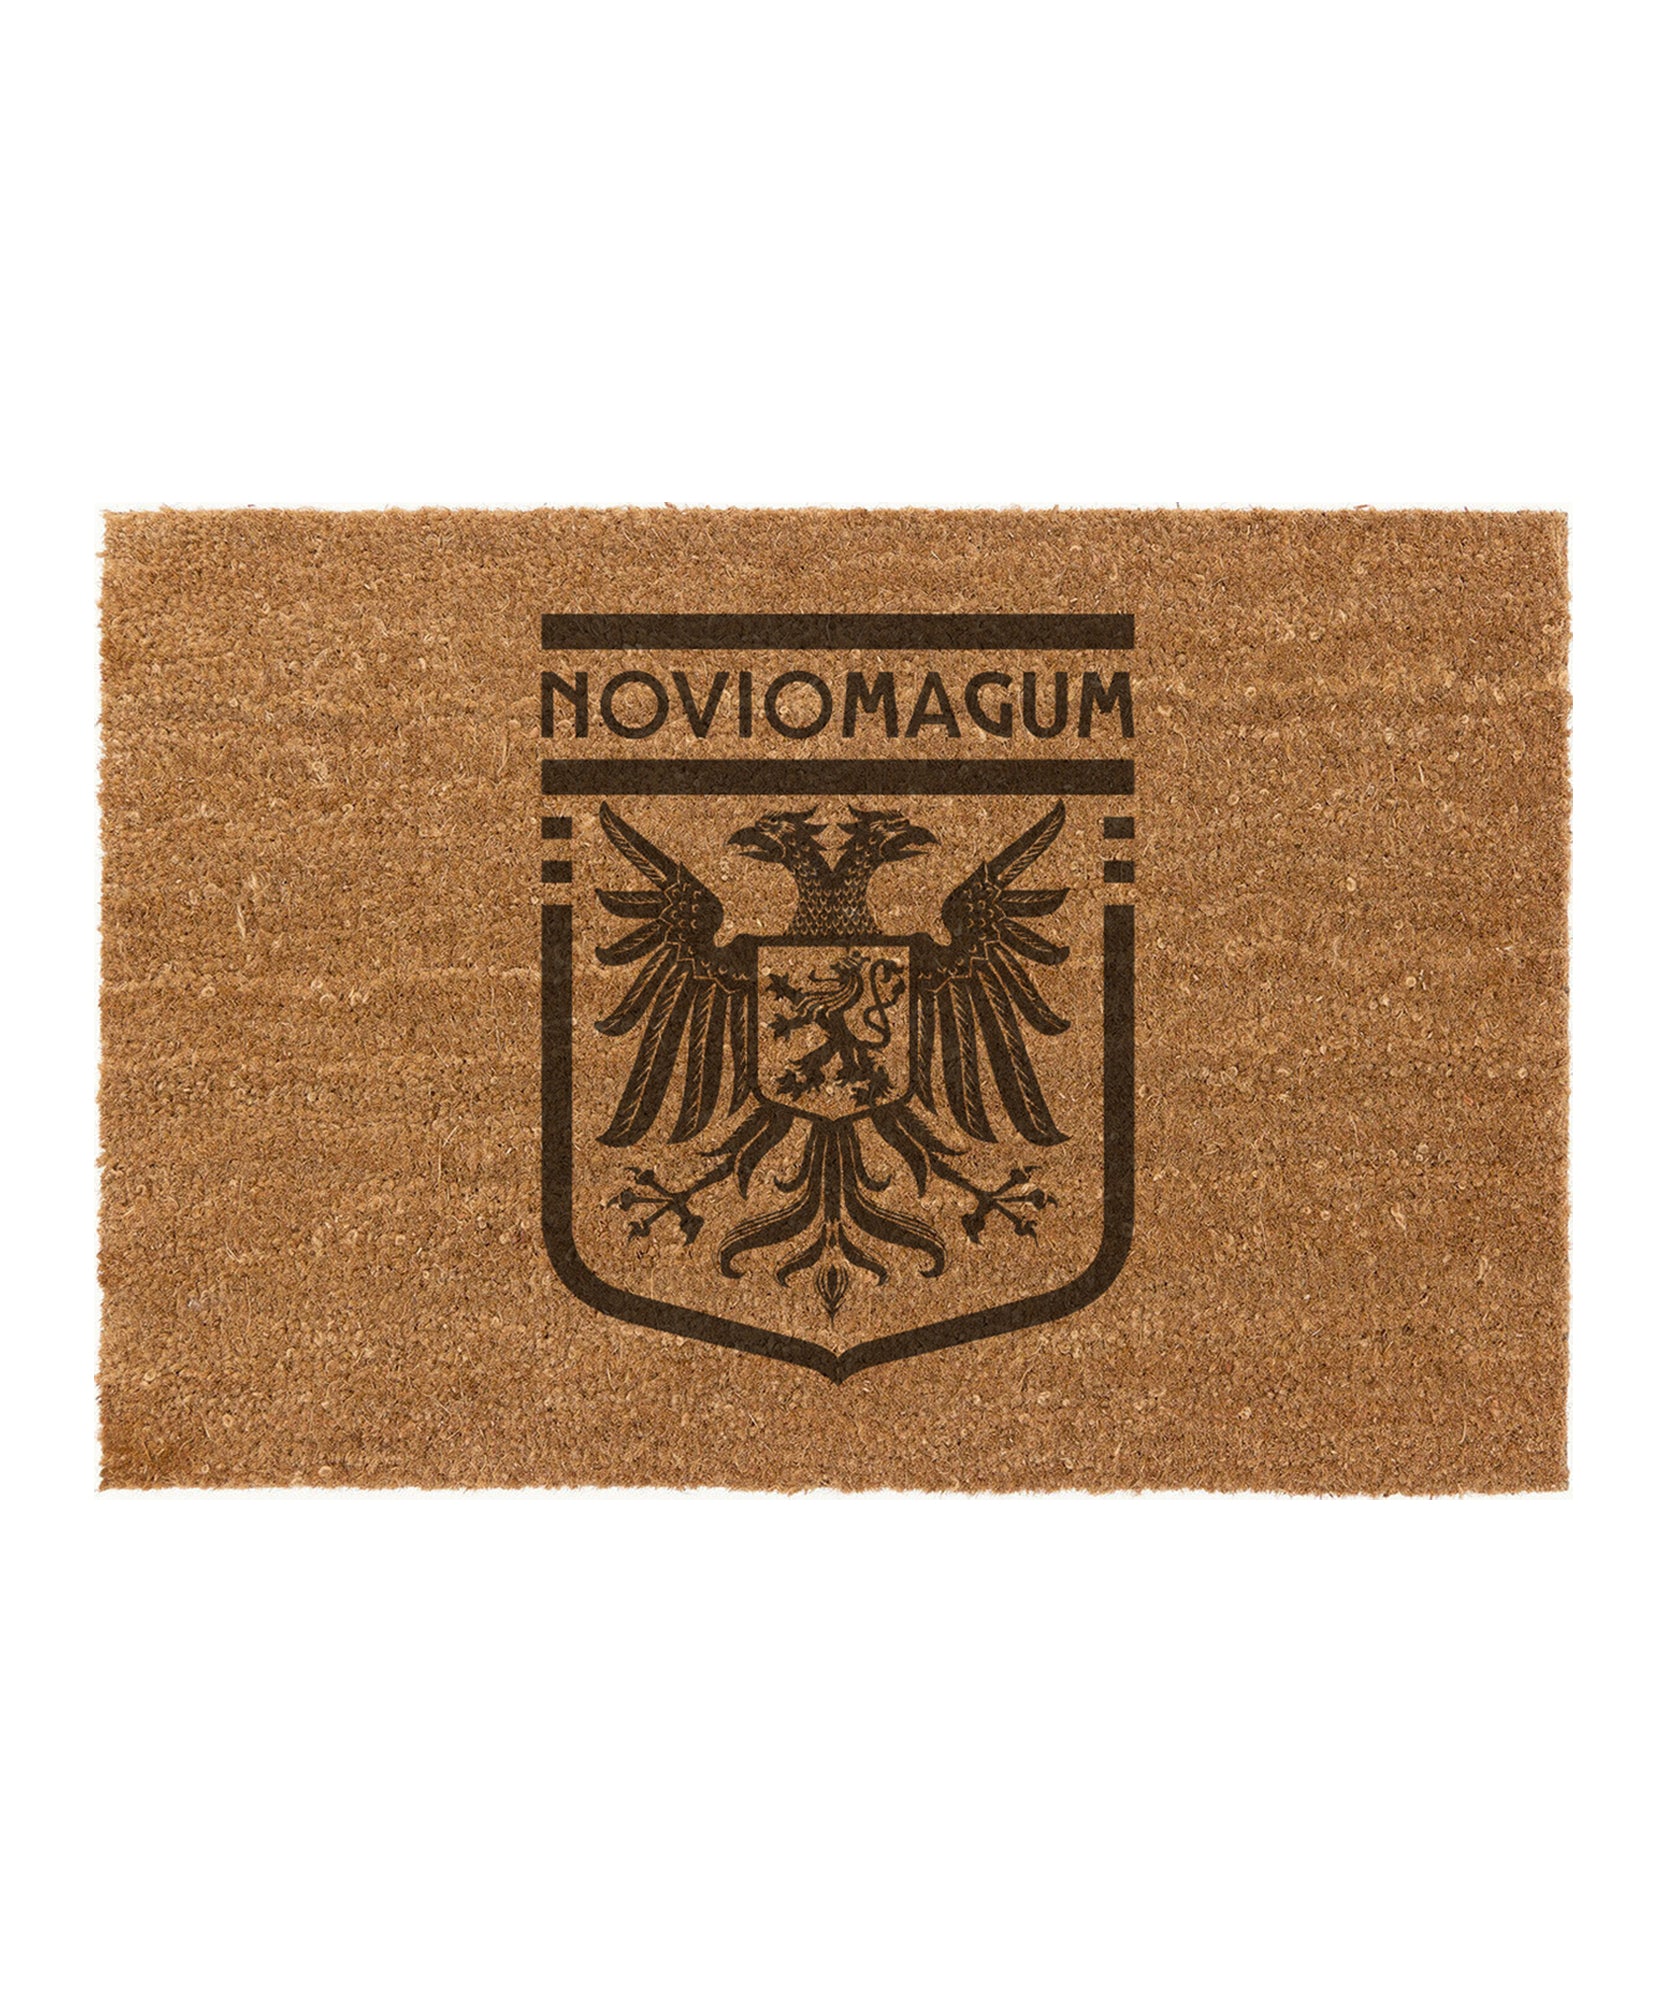 Deurmat met het Noviomagum logo.